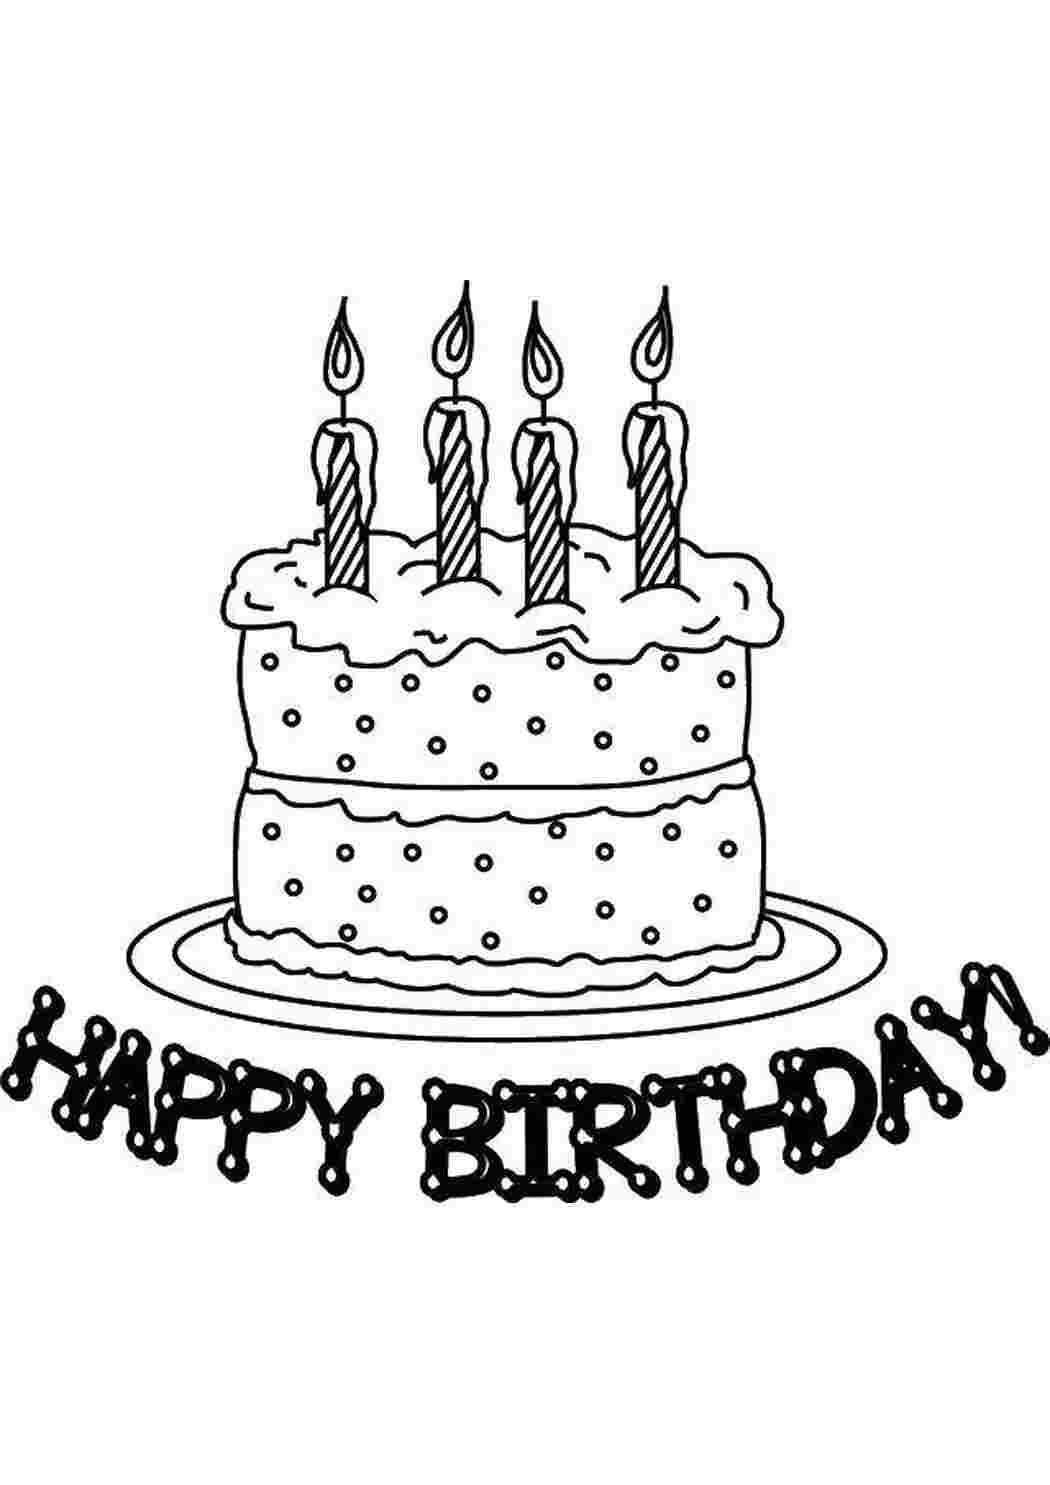 Раскраски С днем рождения! торты торты, свечи, день рождения